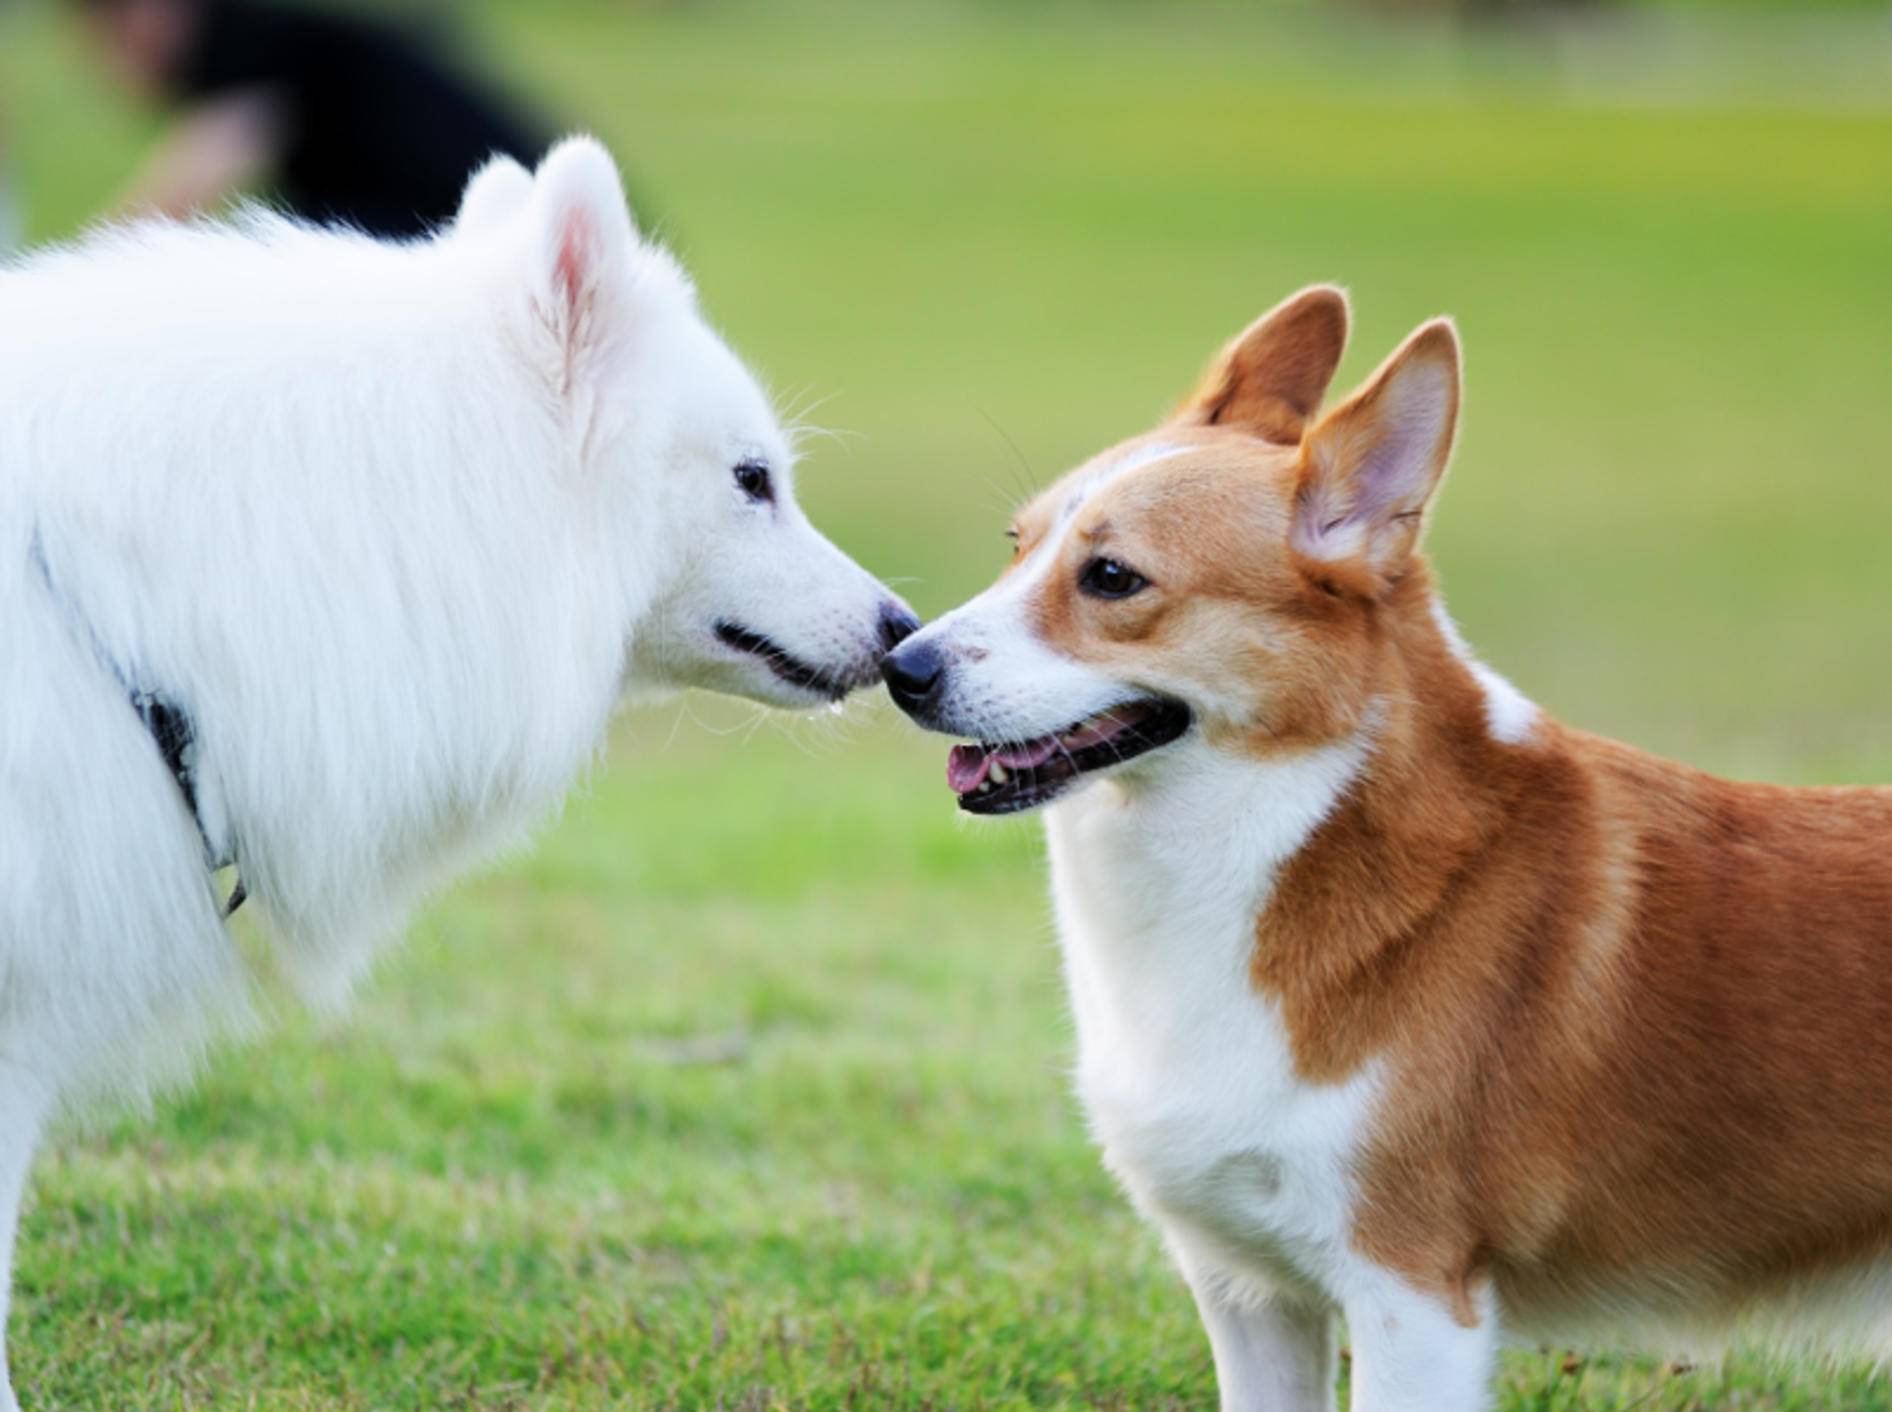 "Hey, du kommst mir irgendwie bekannt vor. Lass uns eine Runde spielen!" – Begegnungstraining für Hunde kann Wunder bewirken – Shutterstock / Bildagentur Zoonar GmbH